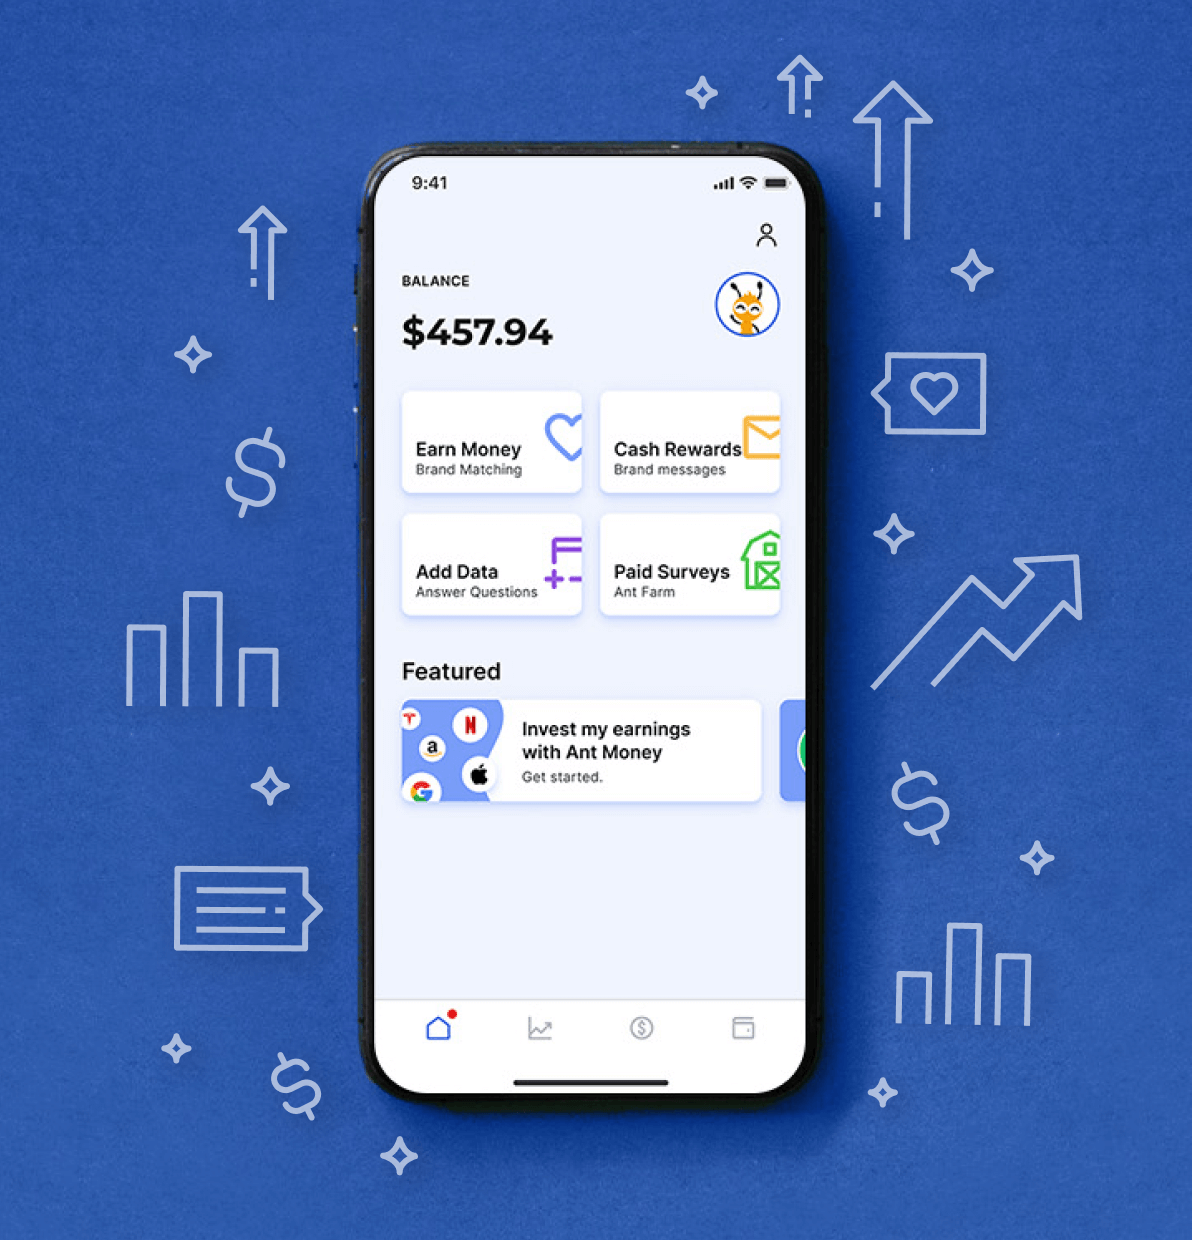 Embedded Finance in app